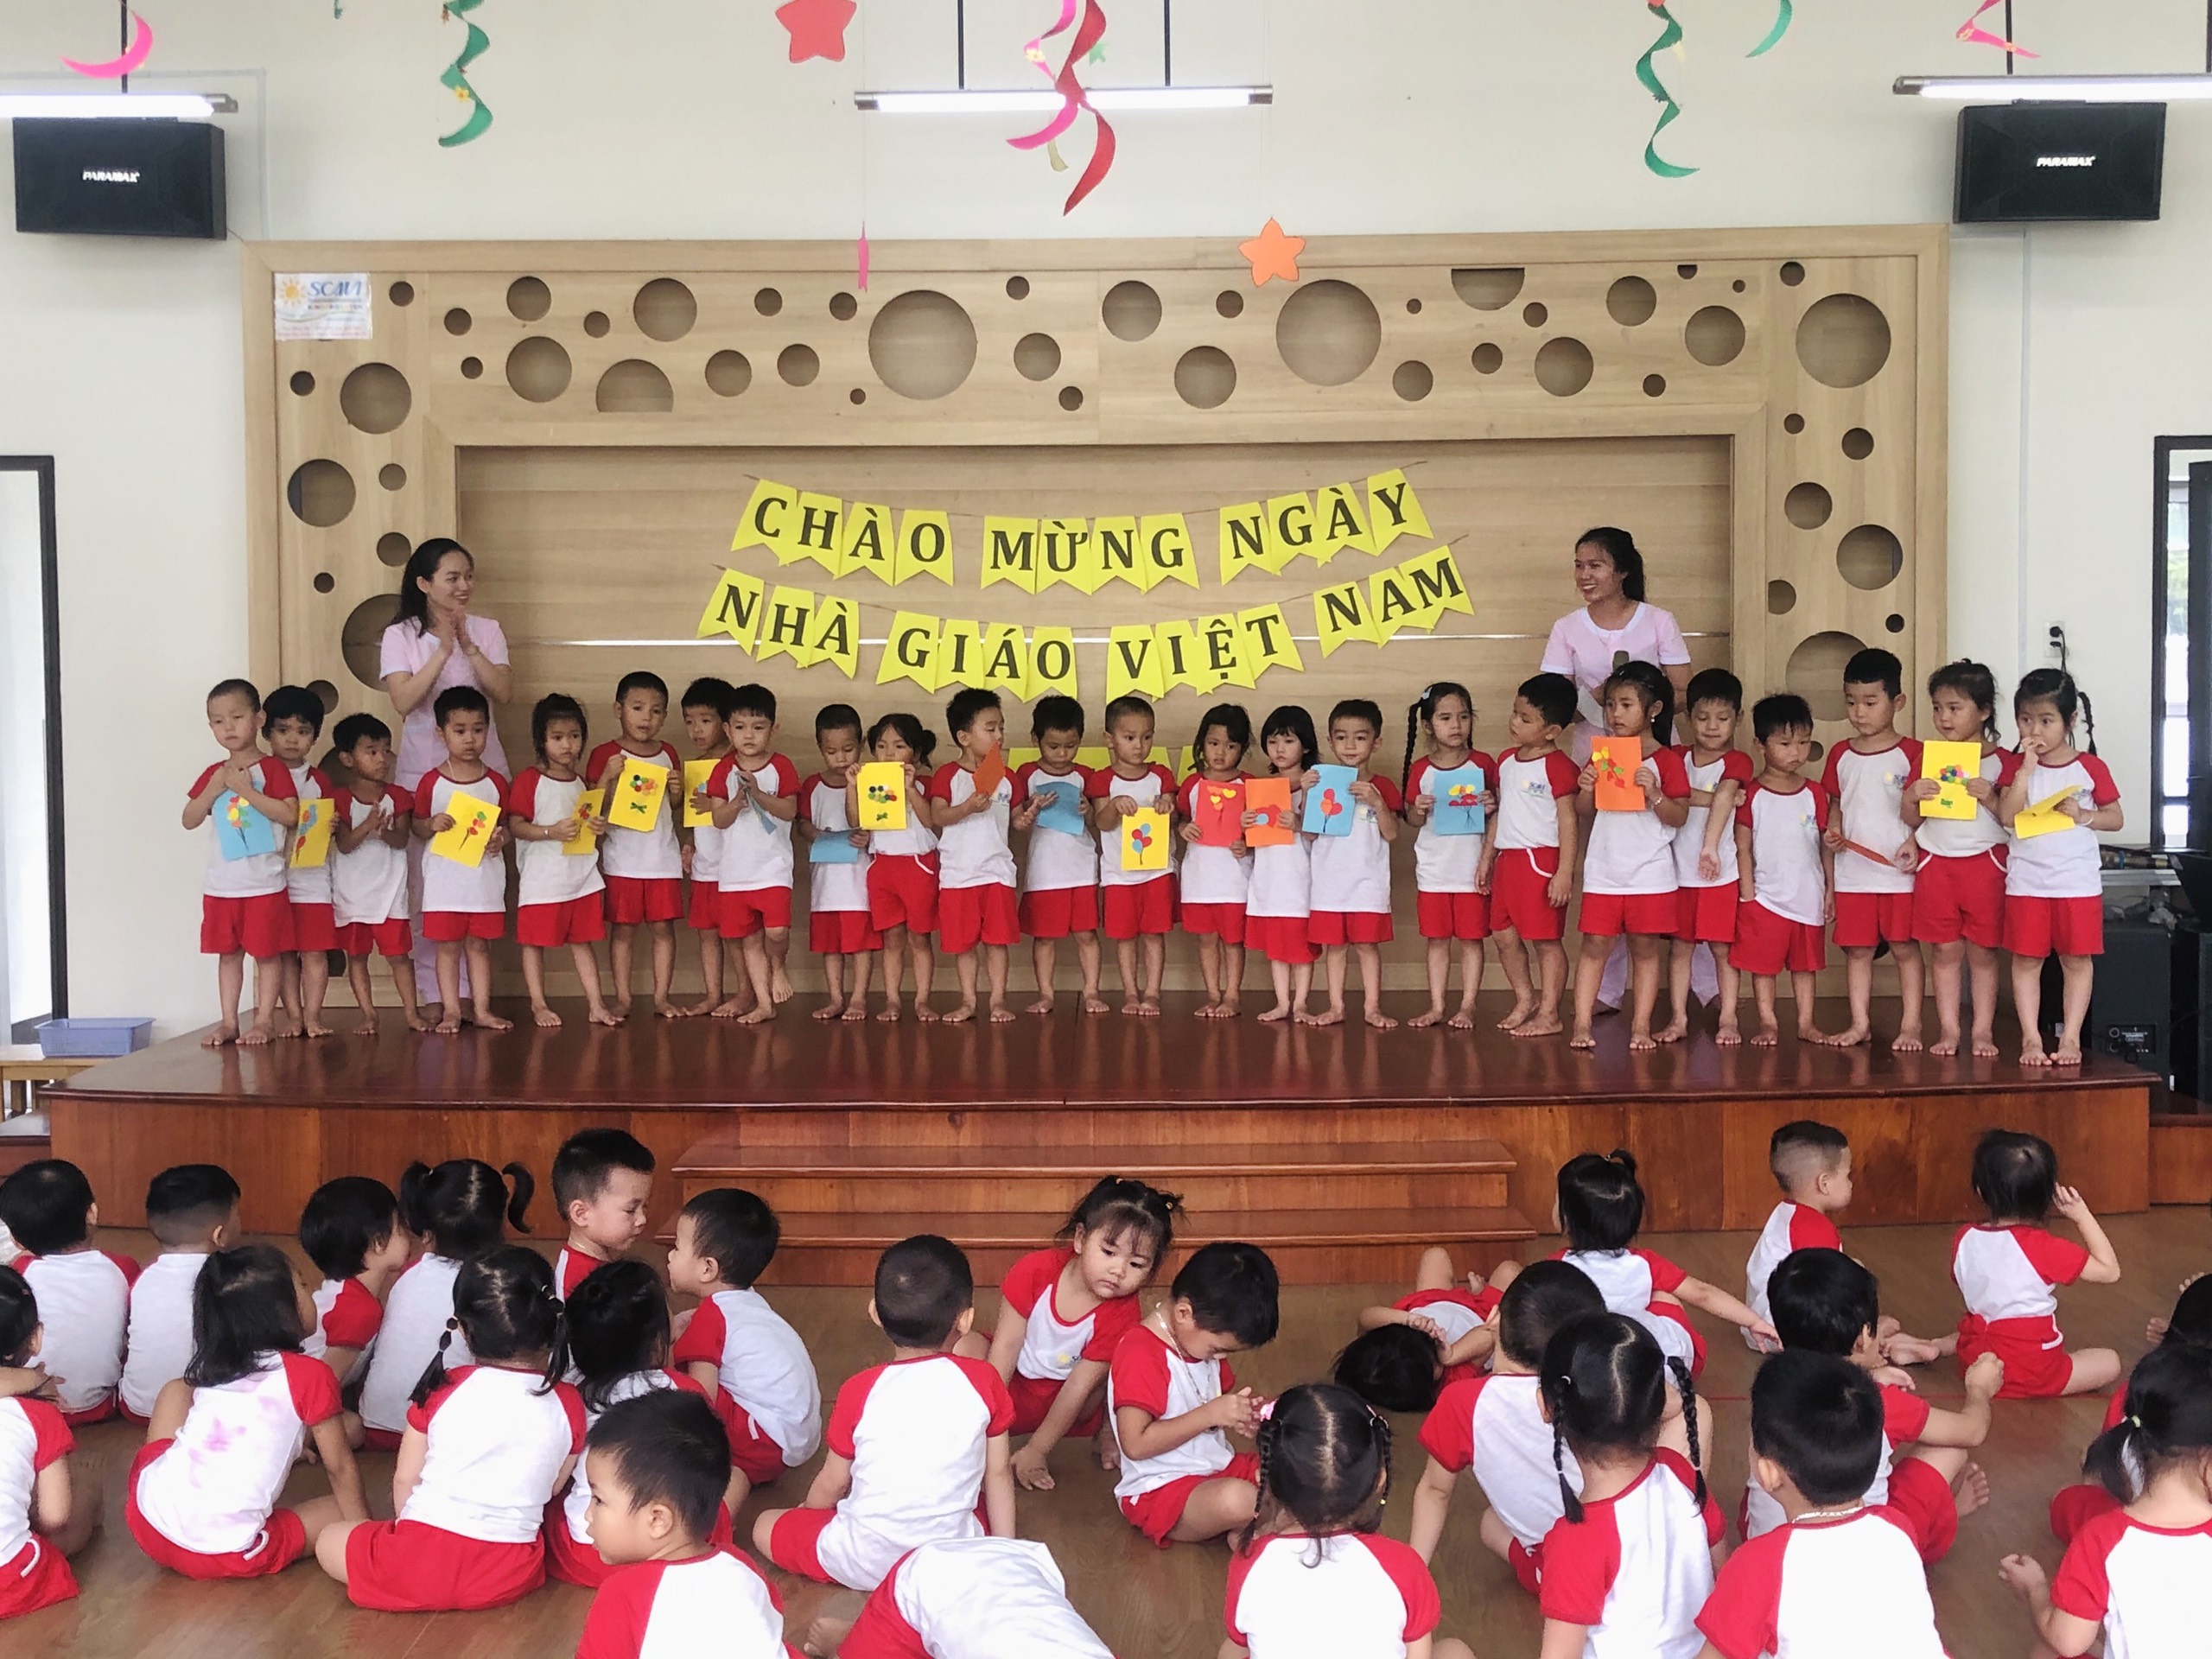 Rapport mensuel de l'école maternelle B'Lao, Novembre 2020